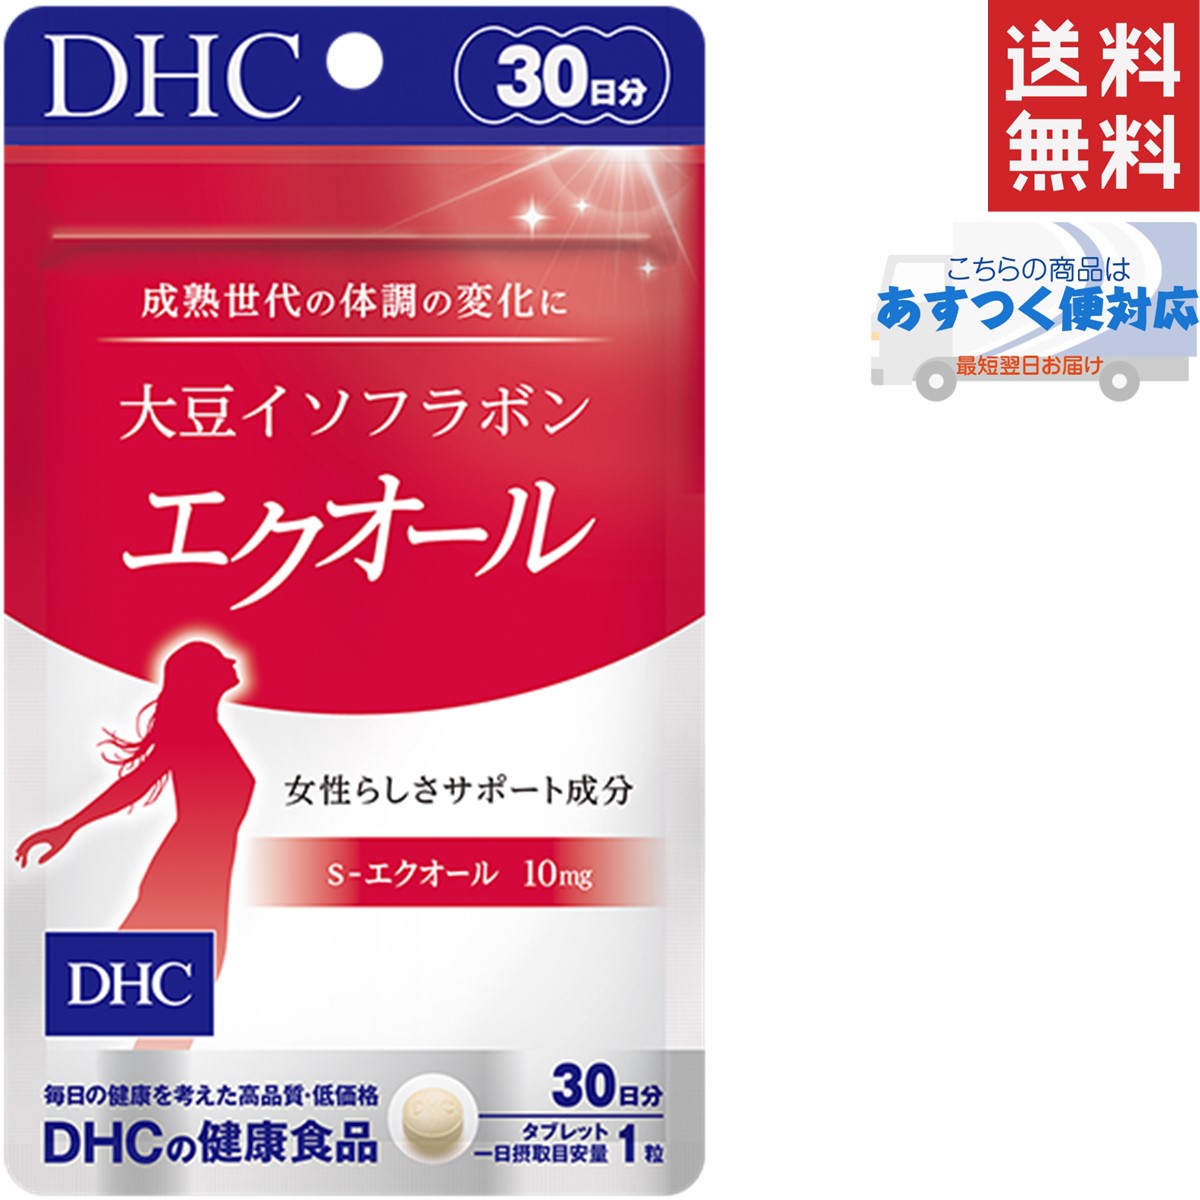 DHC 大豆イソフラボン エクオール 30日分 30粒 あすつく送料無料